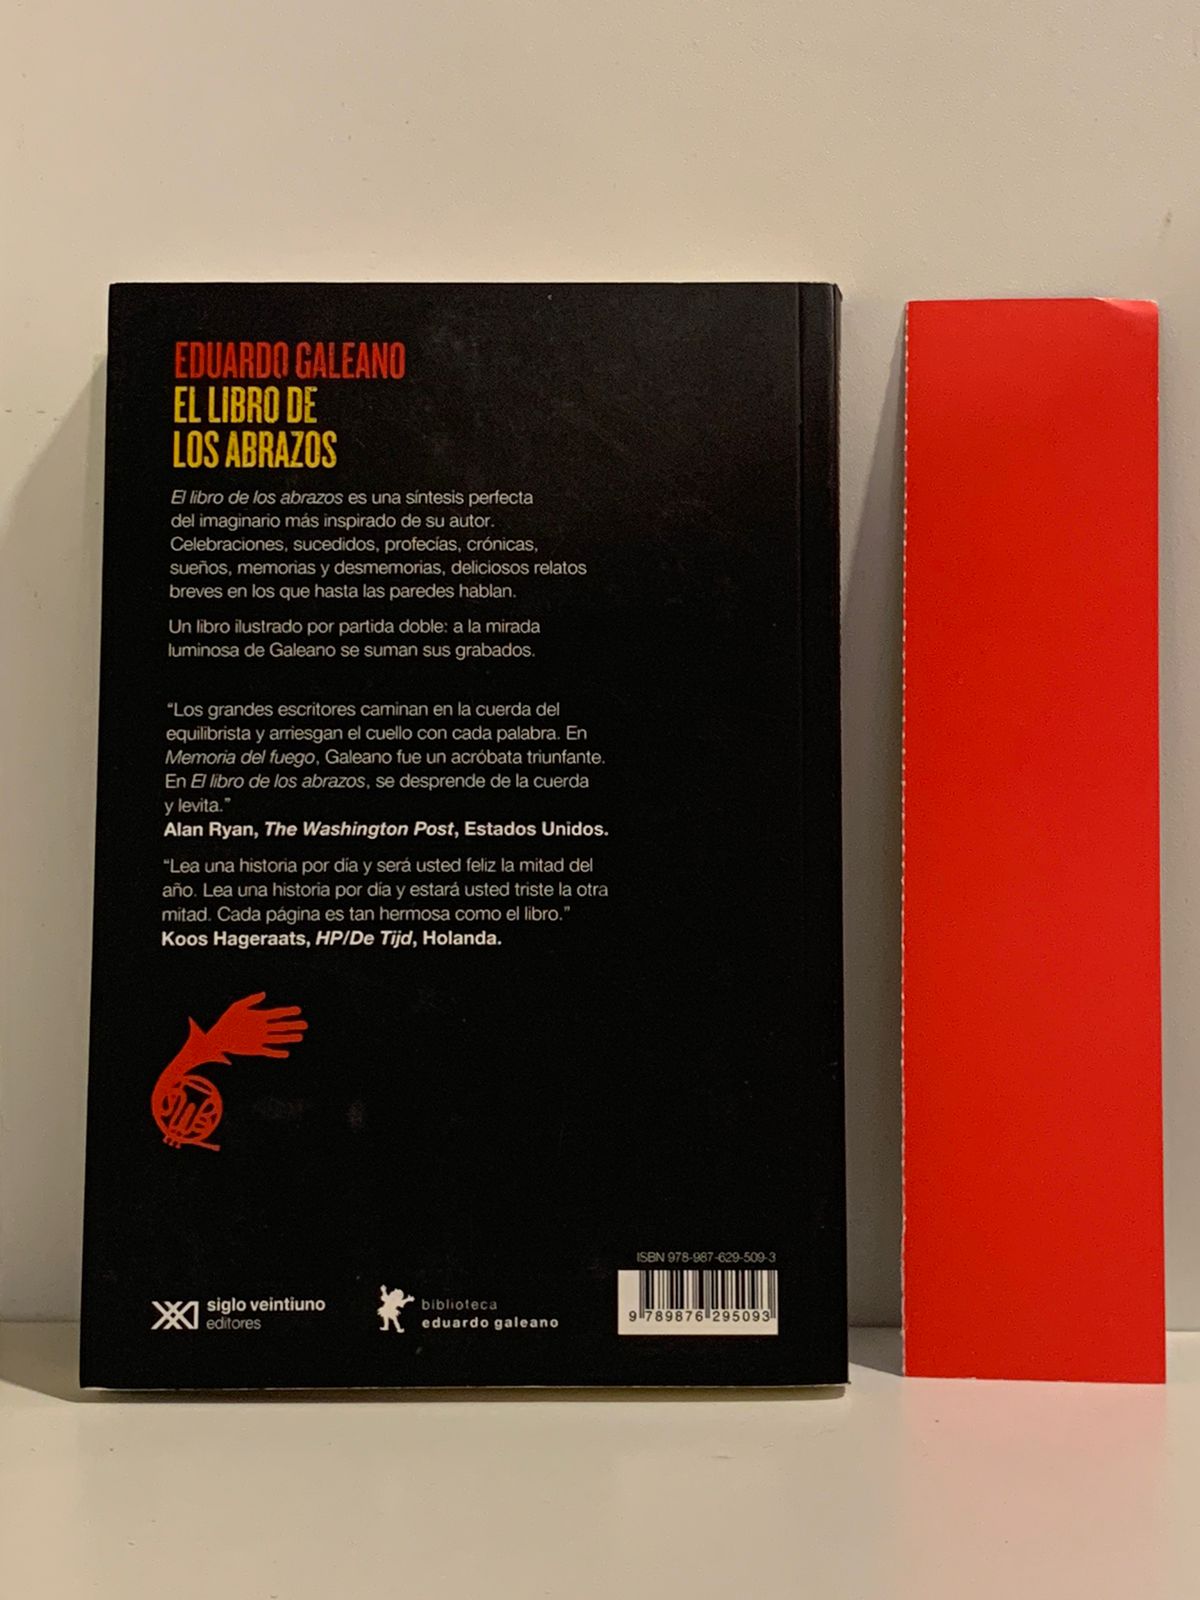 Eduardo Galeano El libro de los abrazos (Dorso)